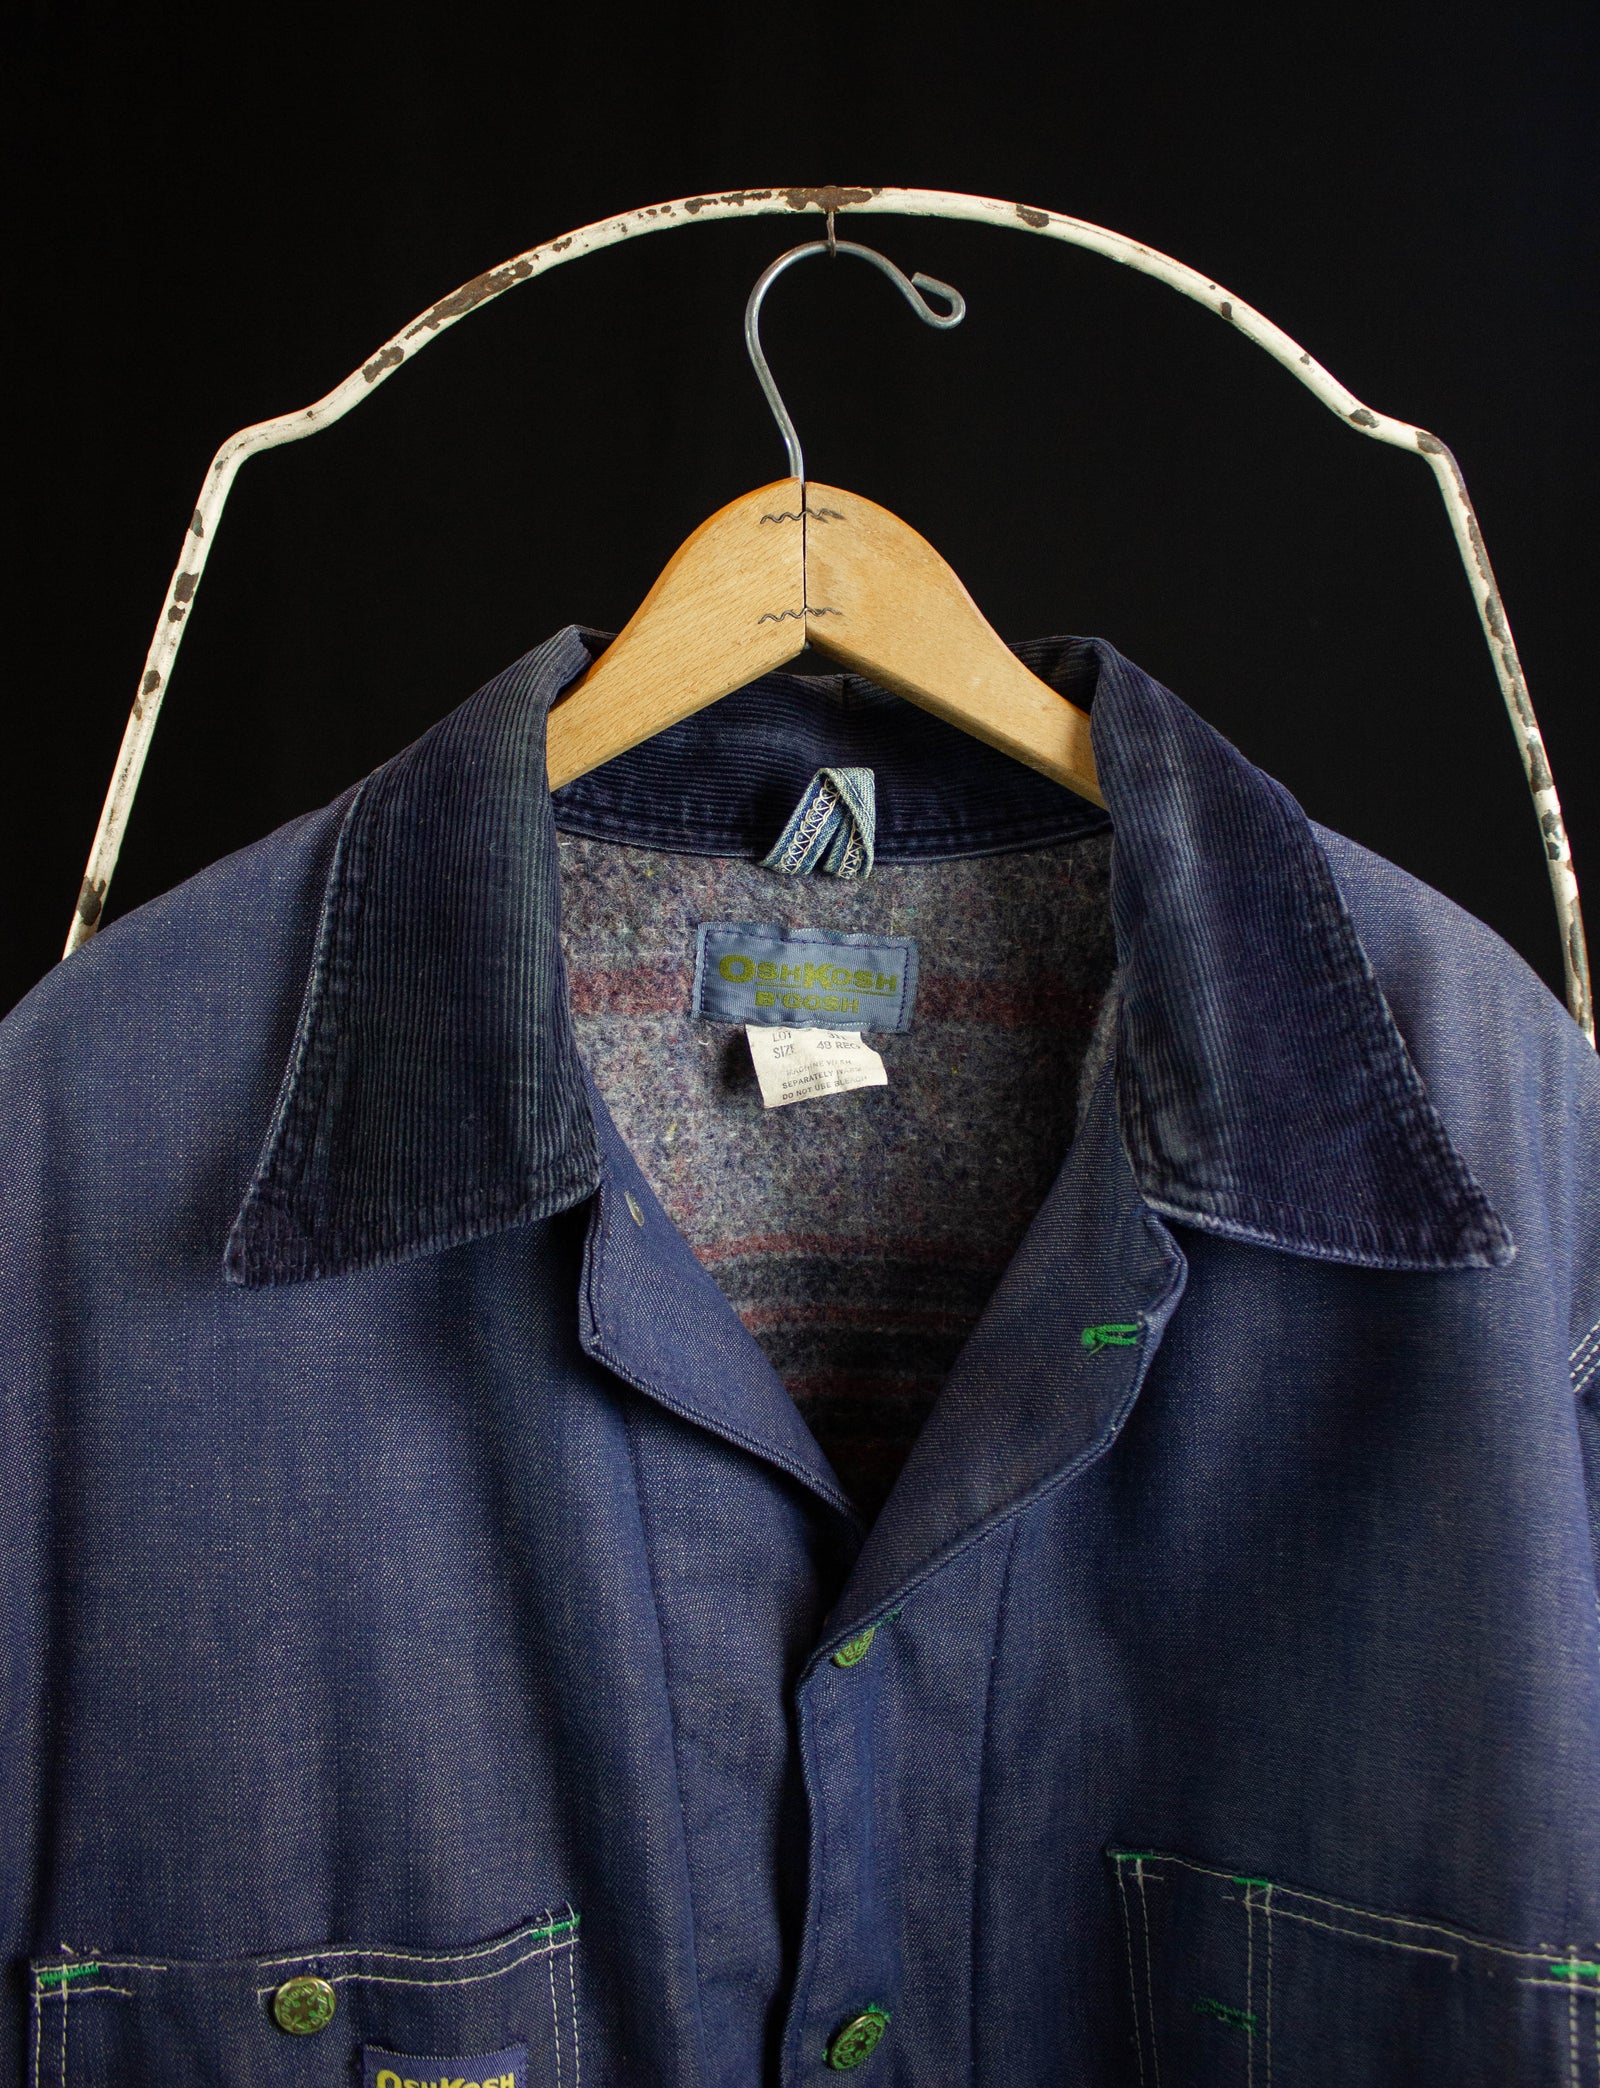 Vintage Oshkosh B'Gosh Blanket Lined Denim Chore Jacket 70s